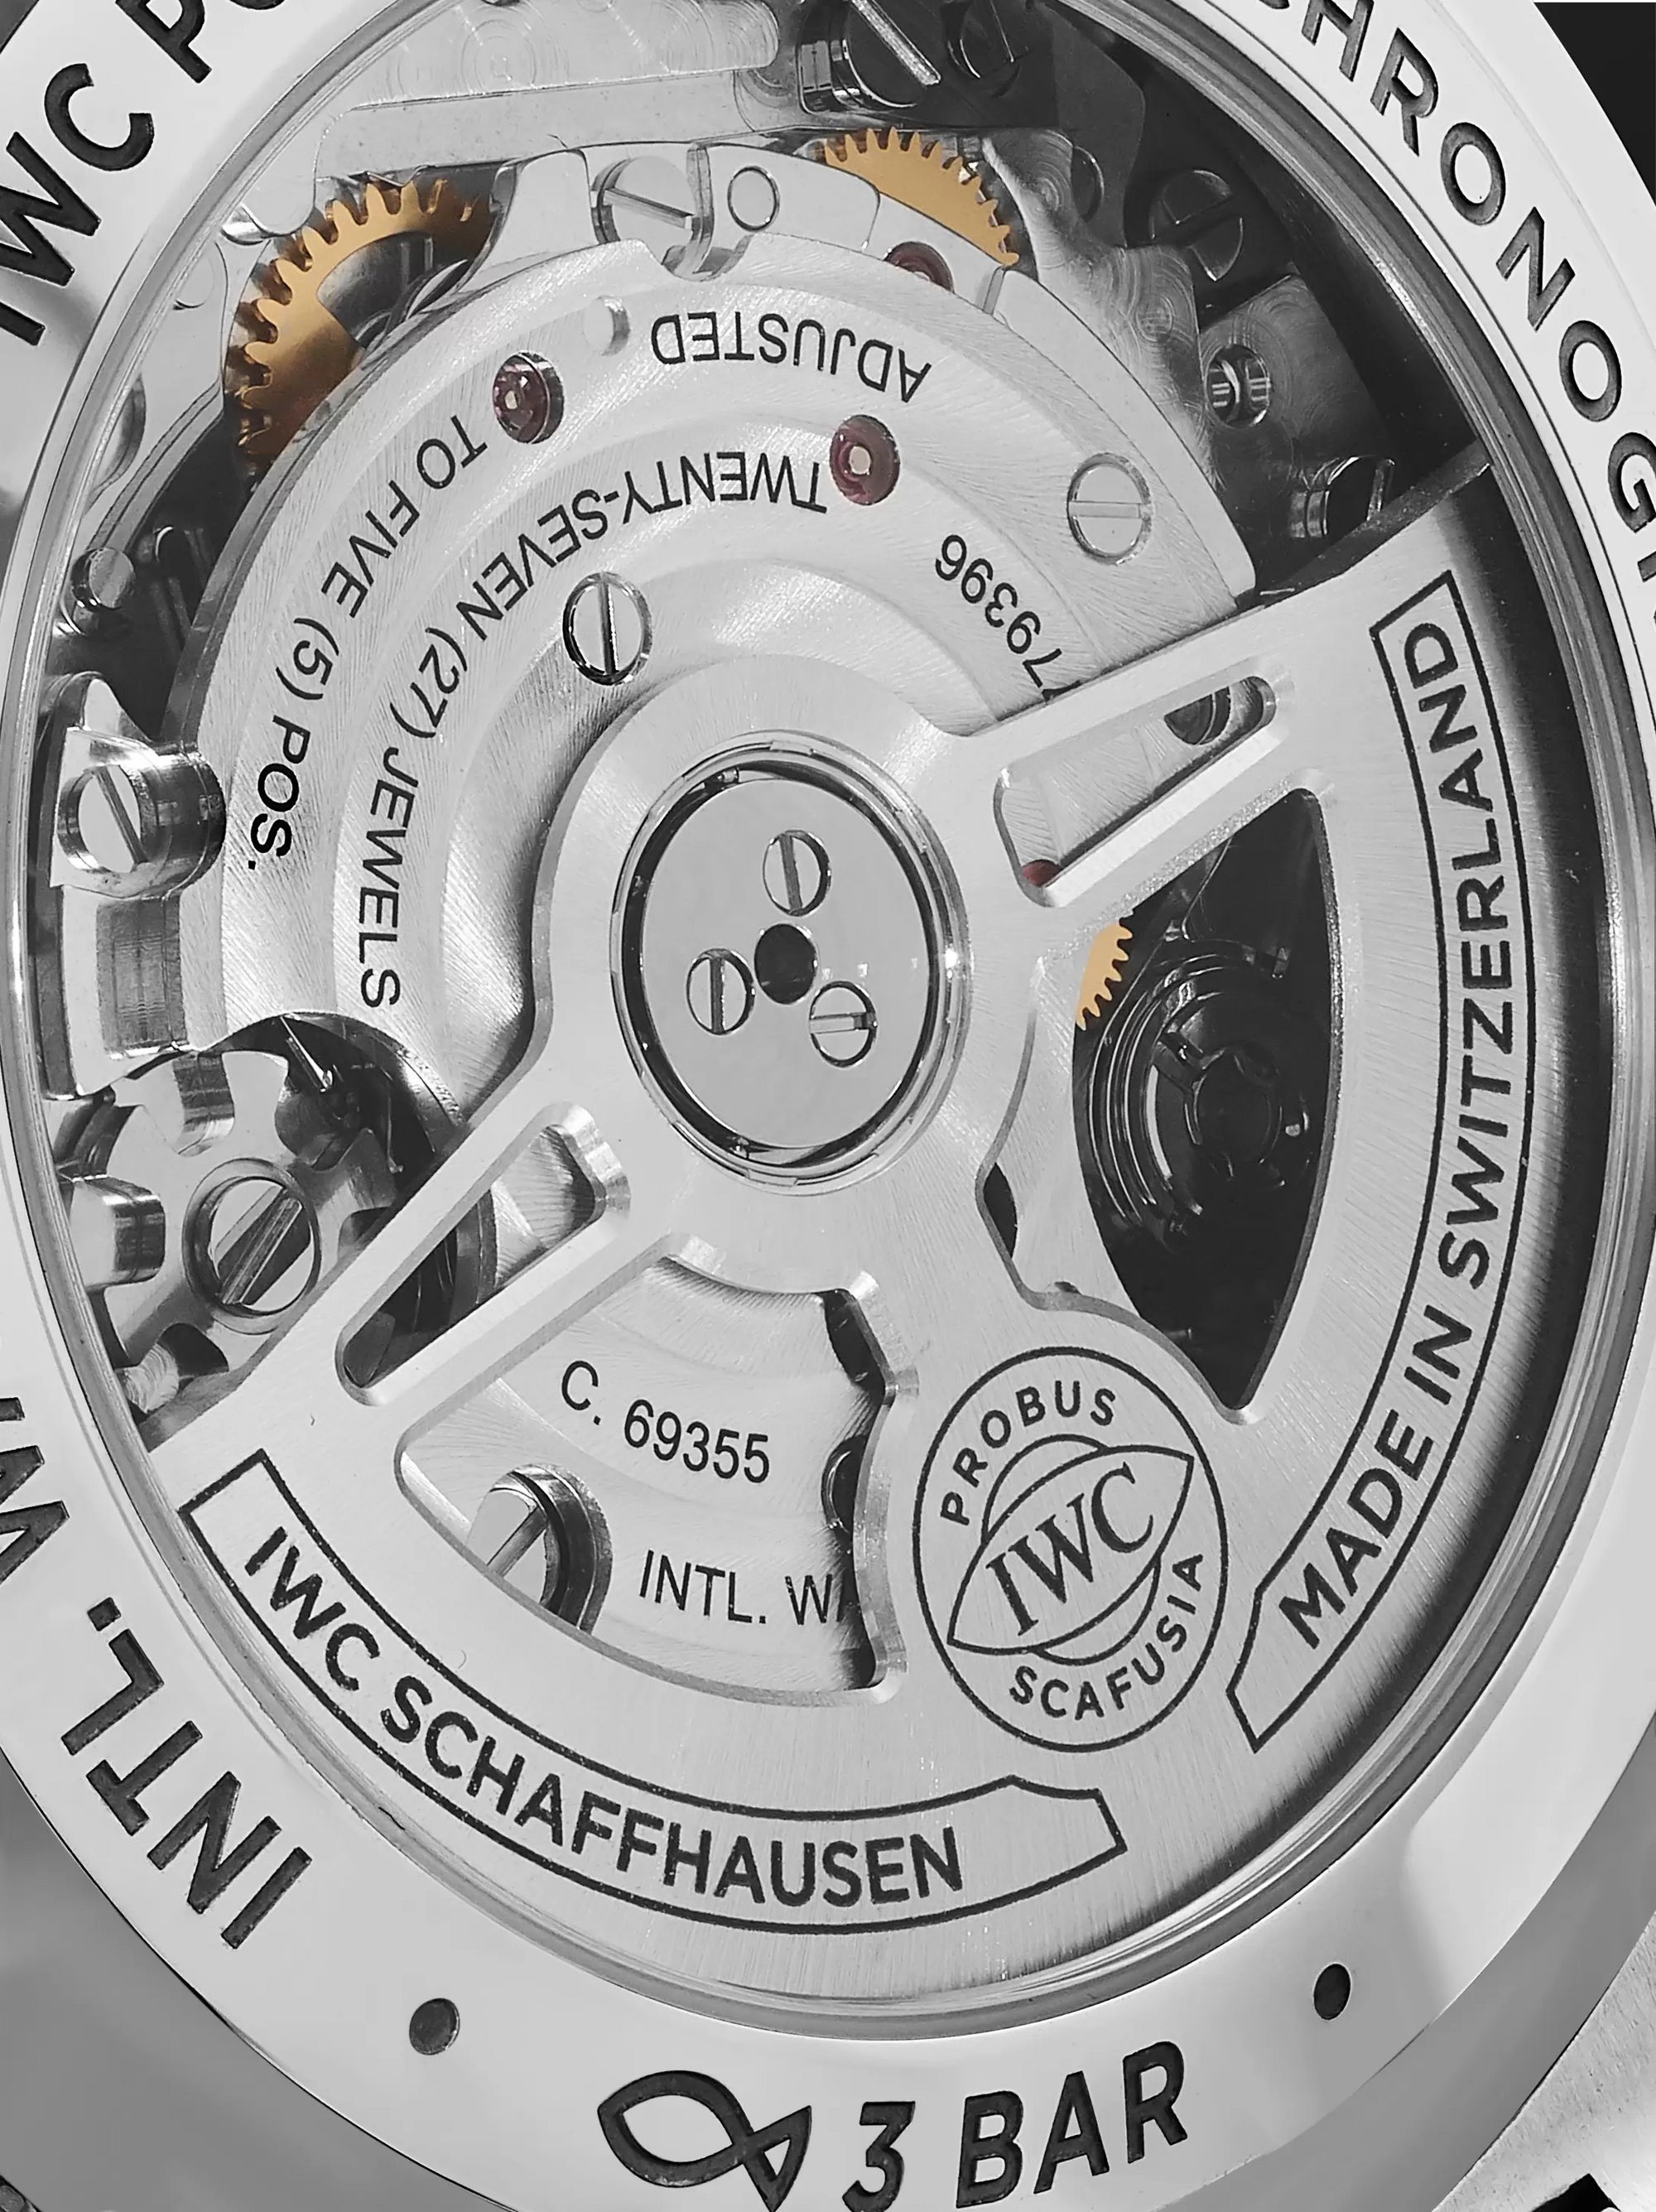 IWC SCHAFFHAUSEN Portugieser Chronograph 41mm Stainless Steel Watch, Ref. No. IW371617